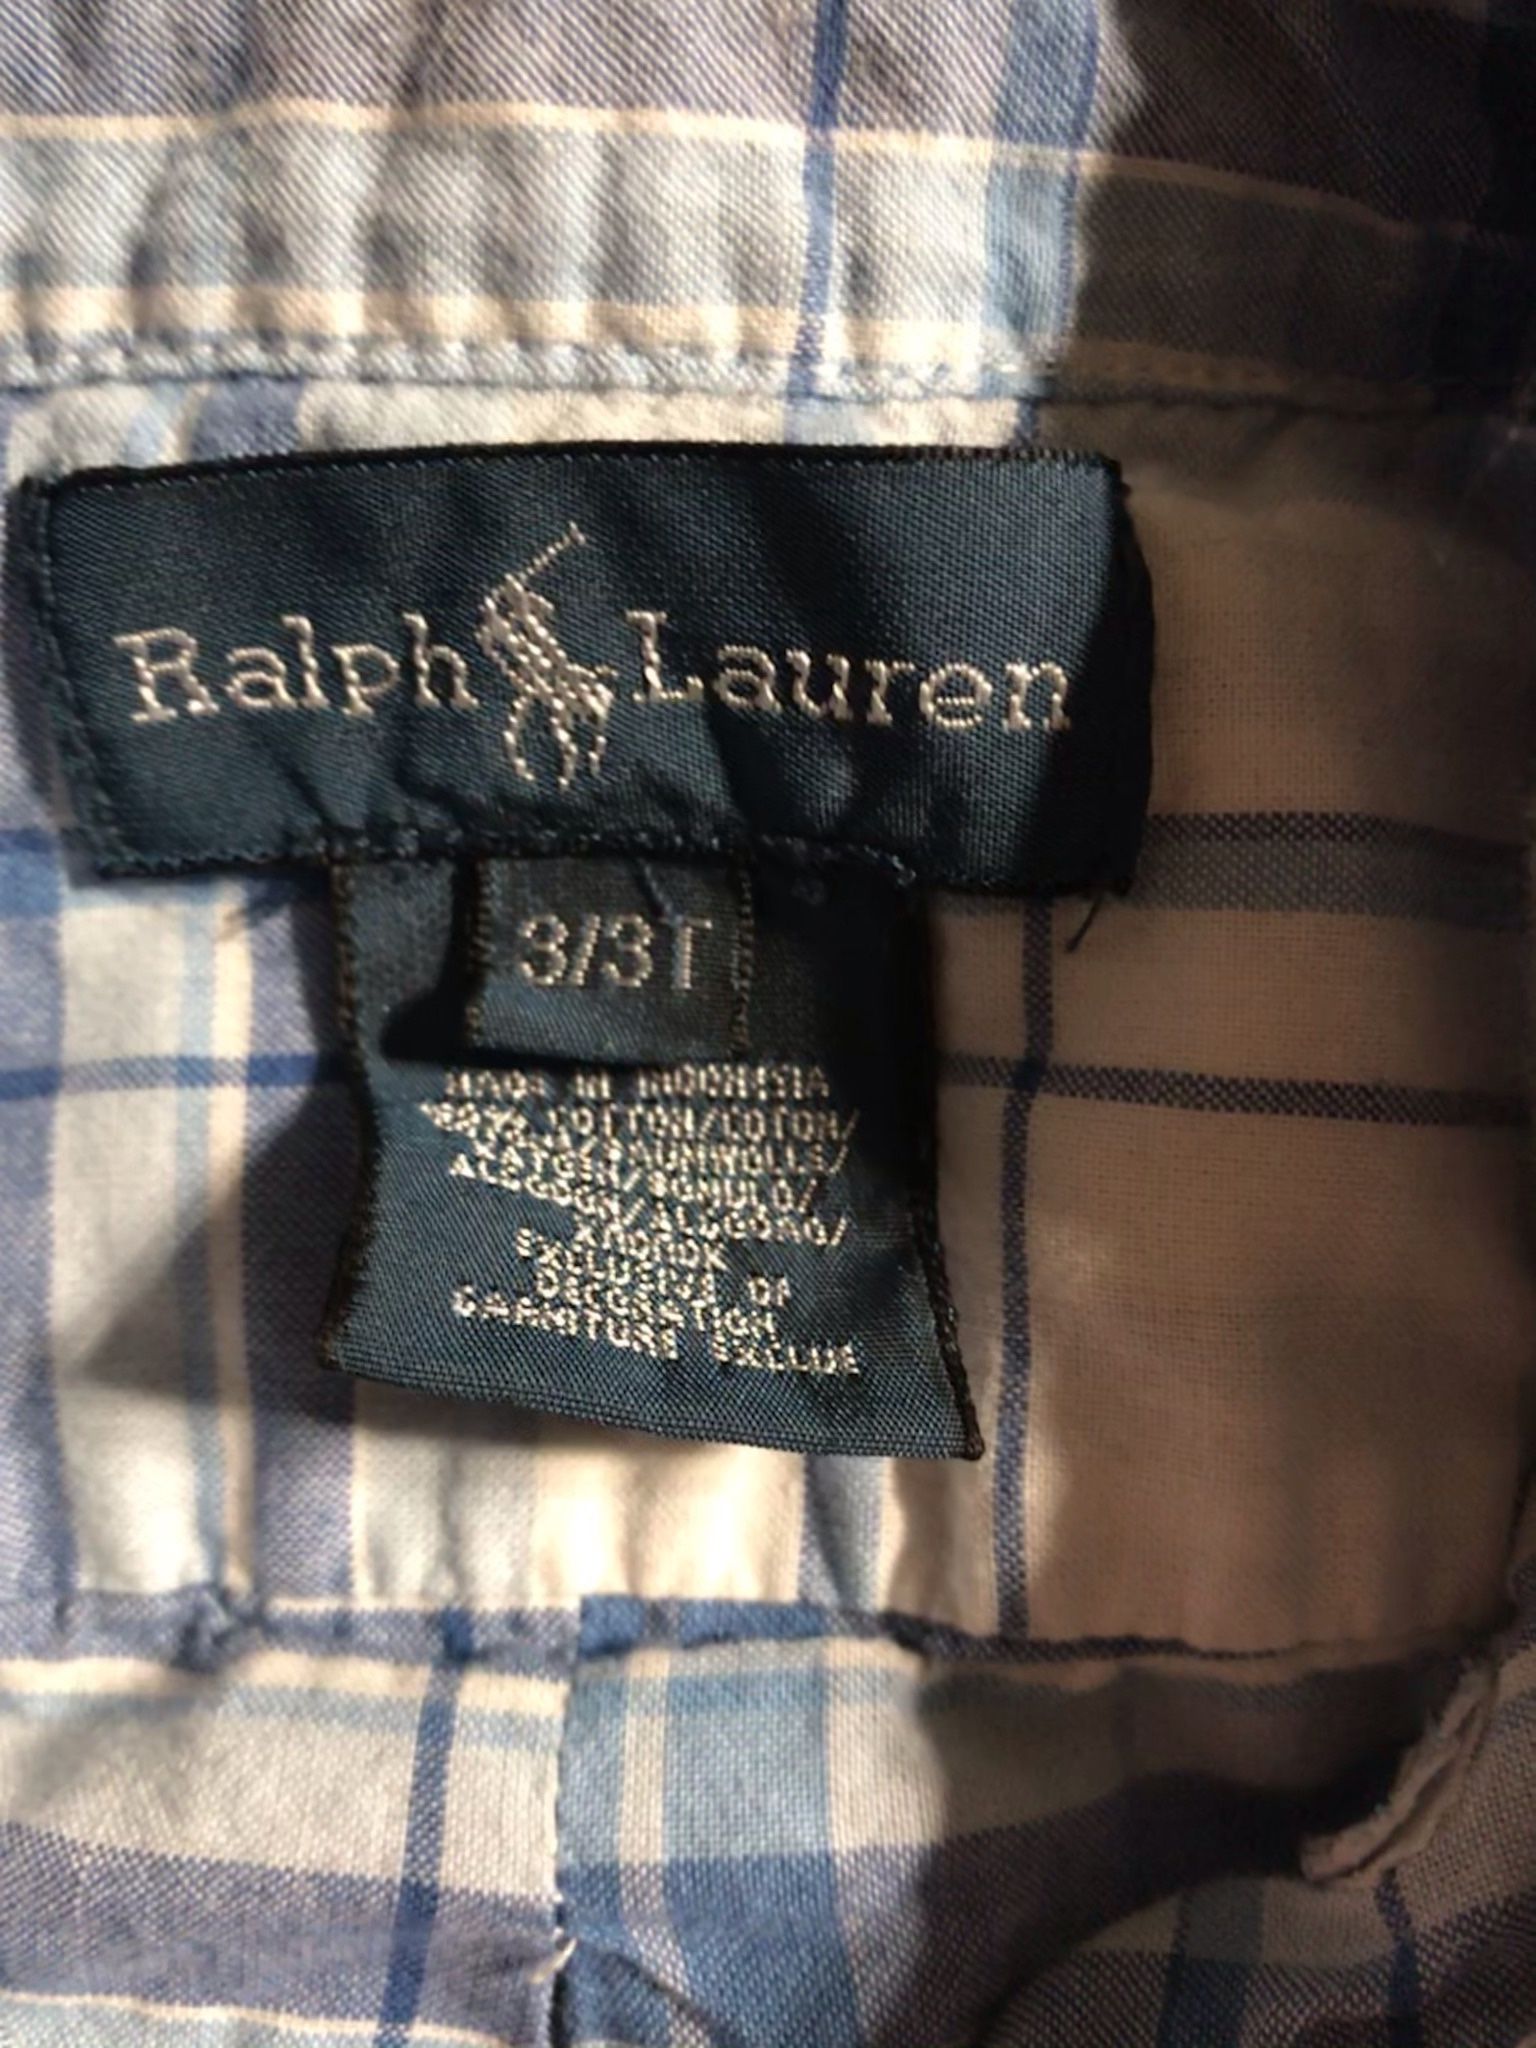 Ralph Lauren Boys 3t s/s Shirt